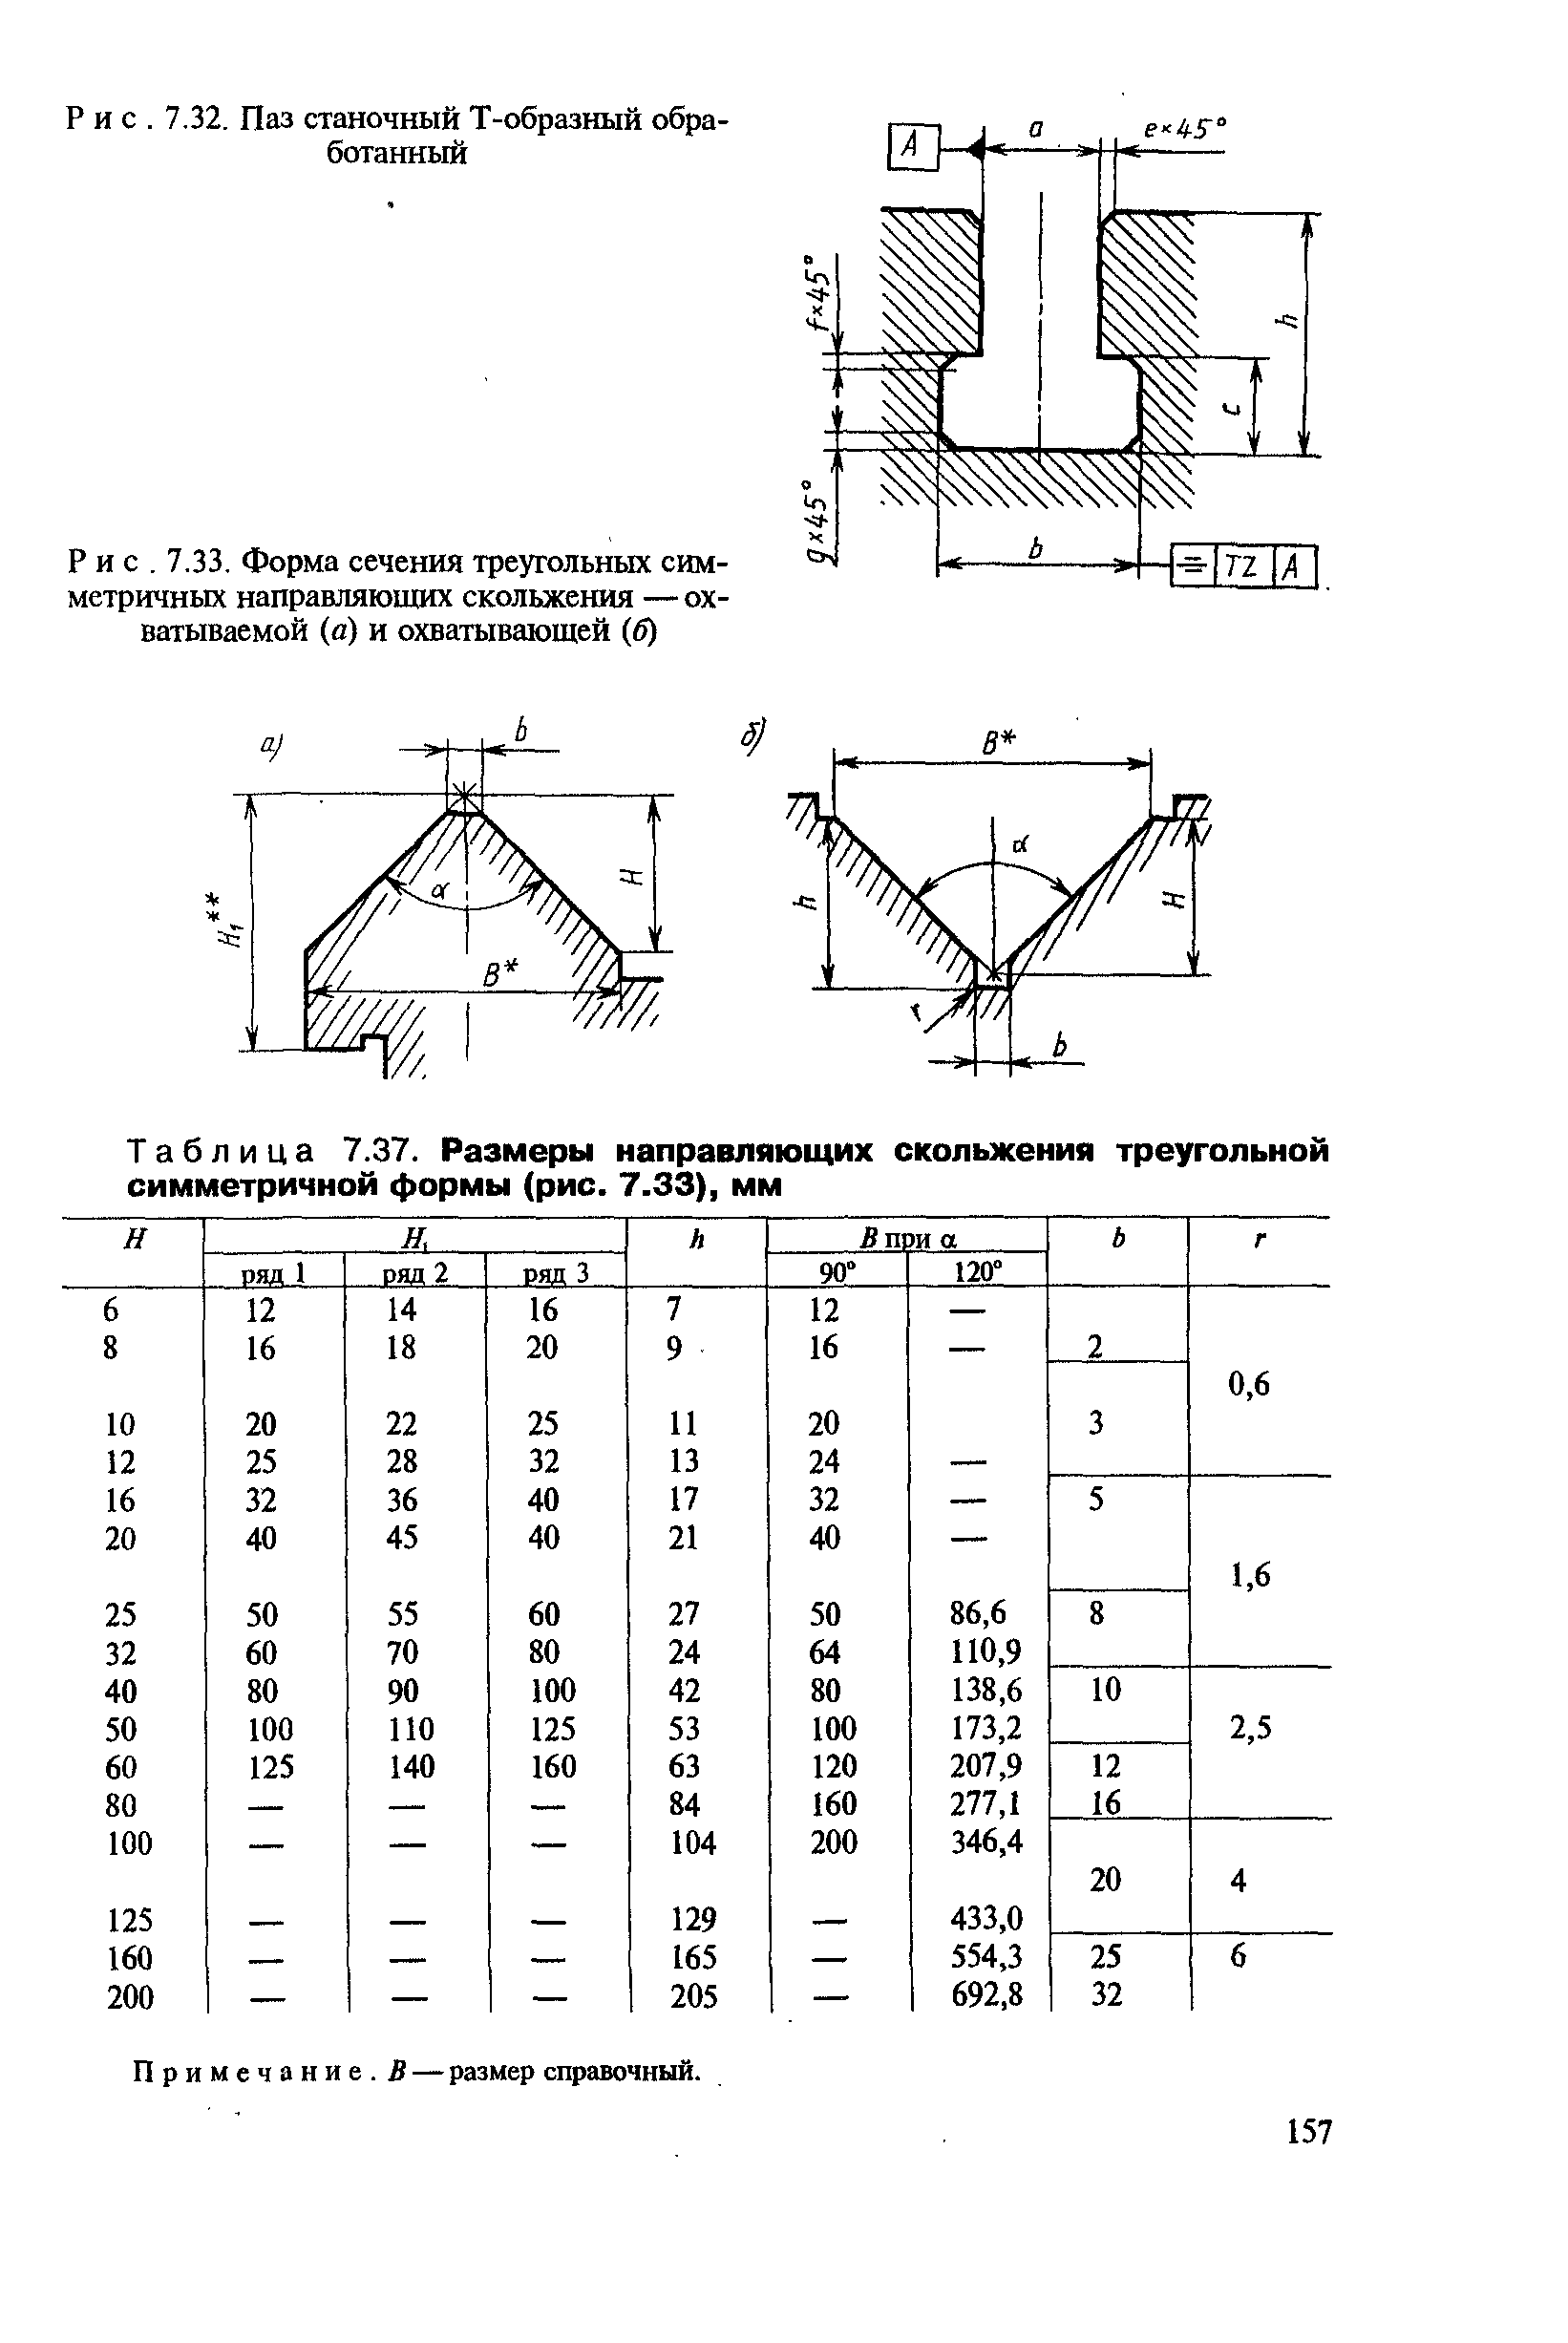 Таблица 7.37. Размеры направляющих скольжения треугольной симметричной формы (рис. 7.33), мм
